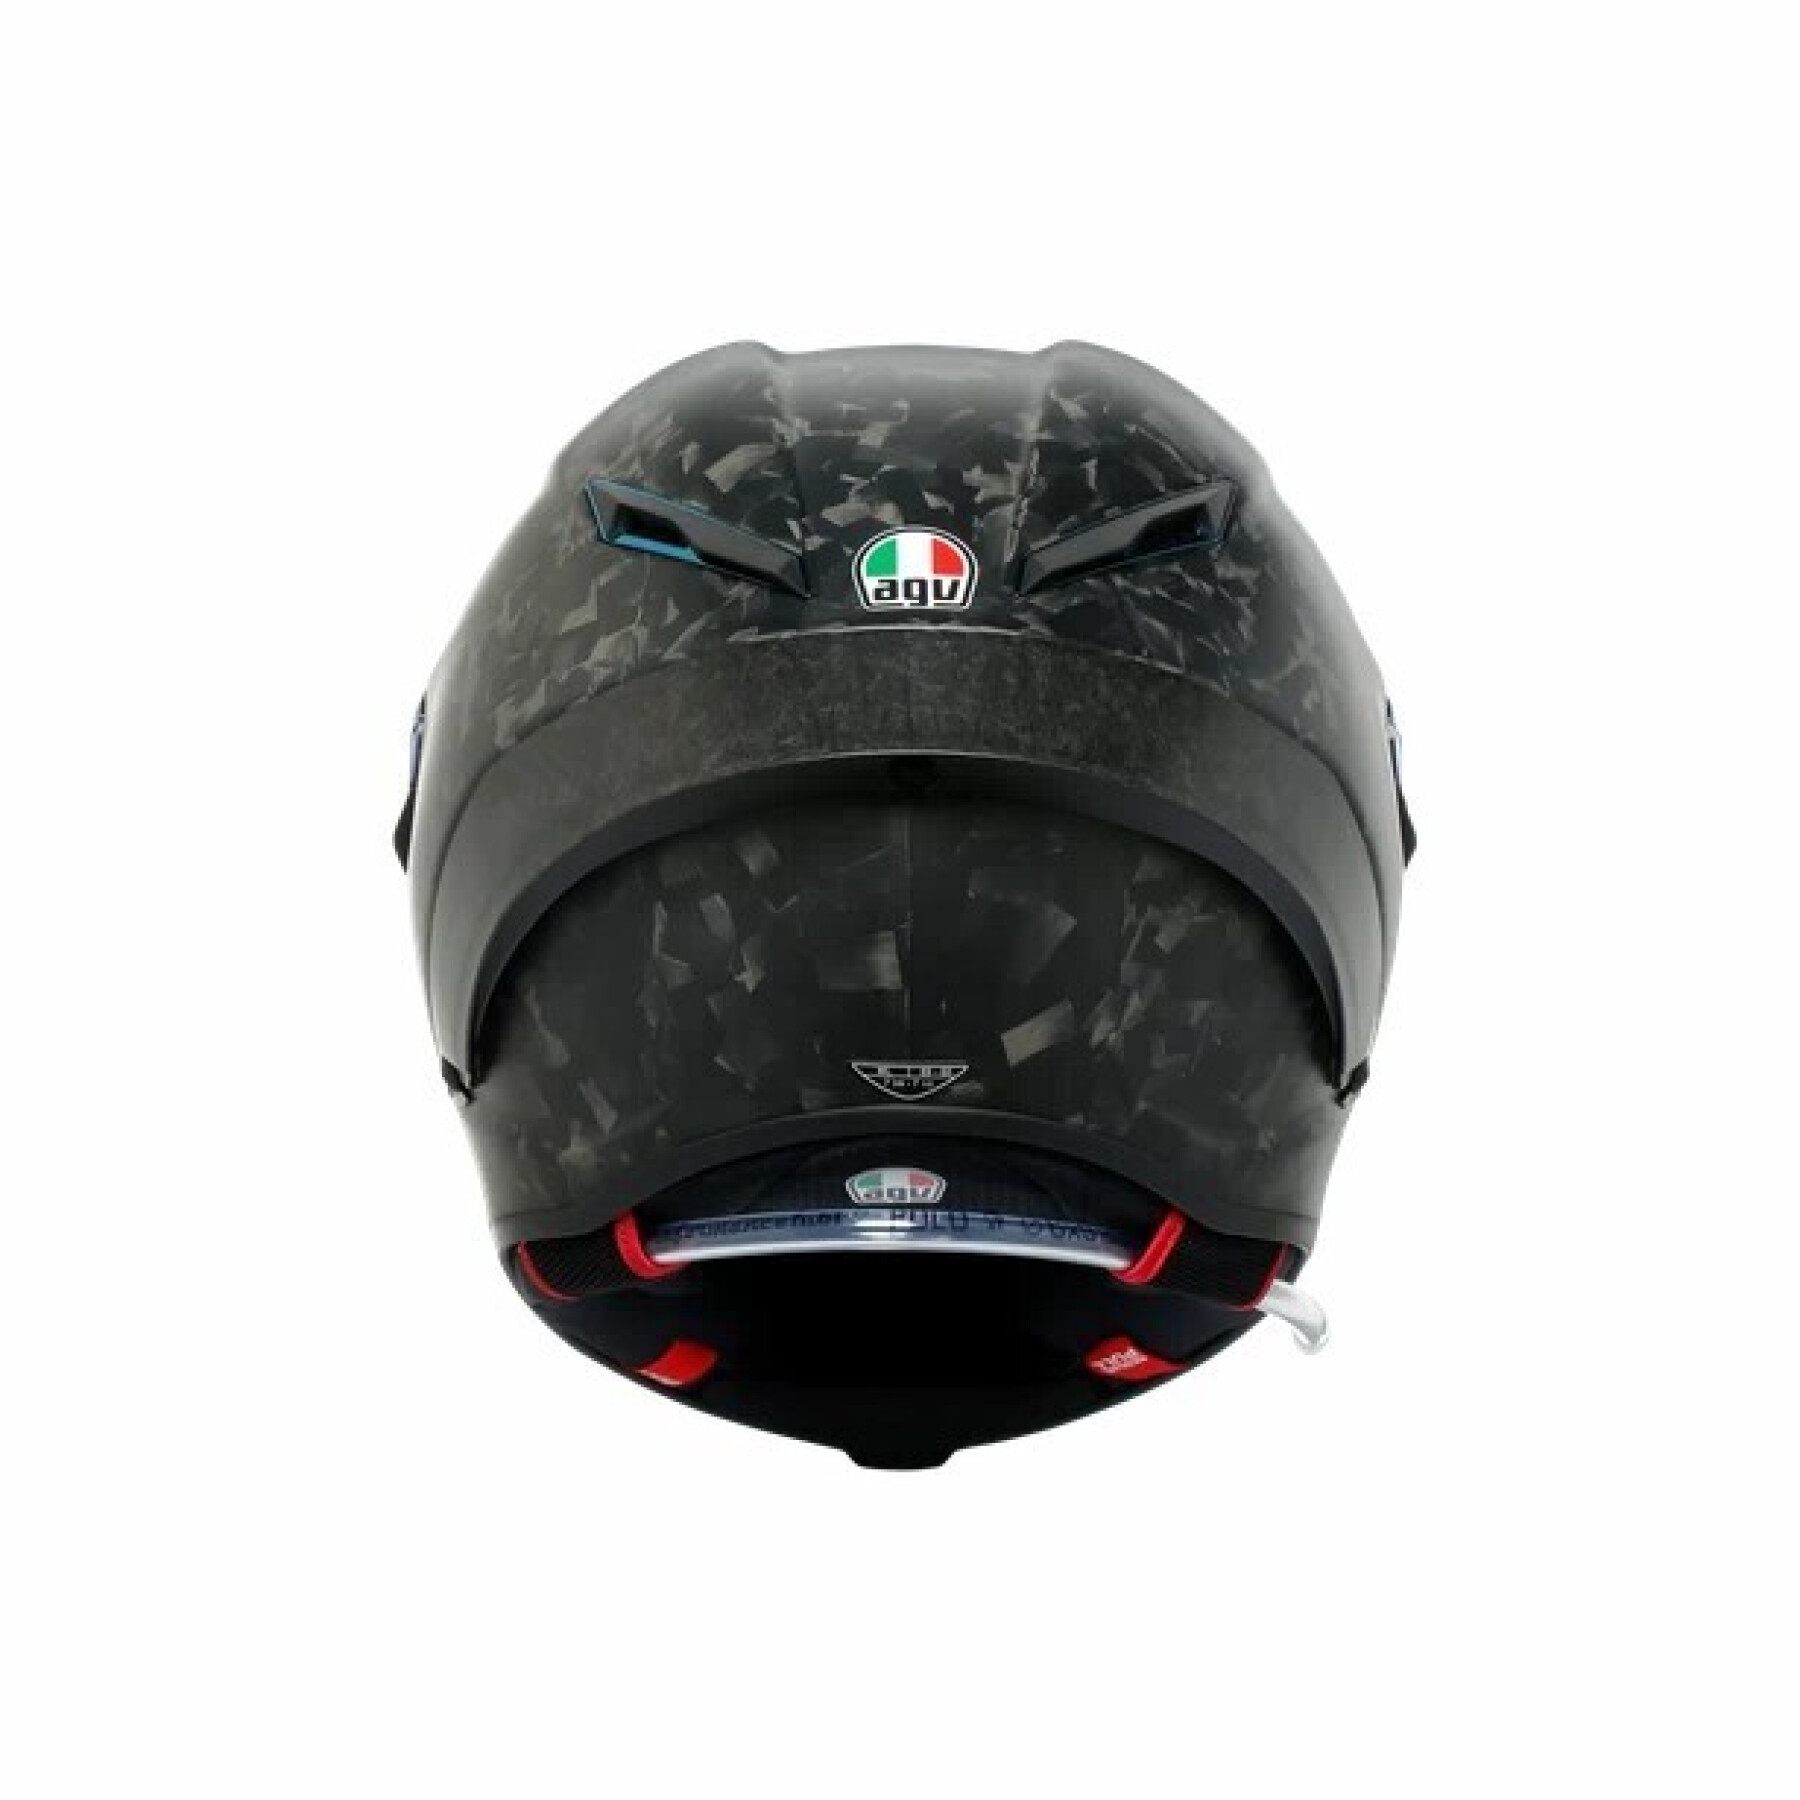 Full face motorcycle helmet AGV Pista GP RR Futuro Carbonio Forgiato